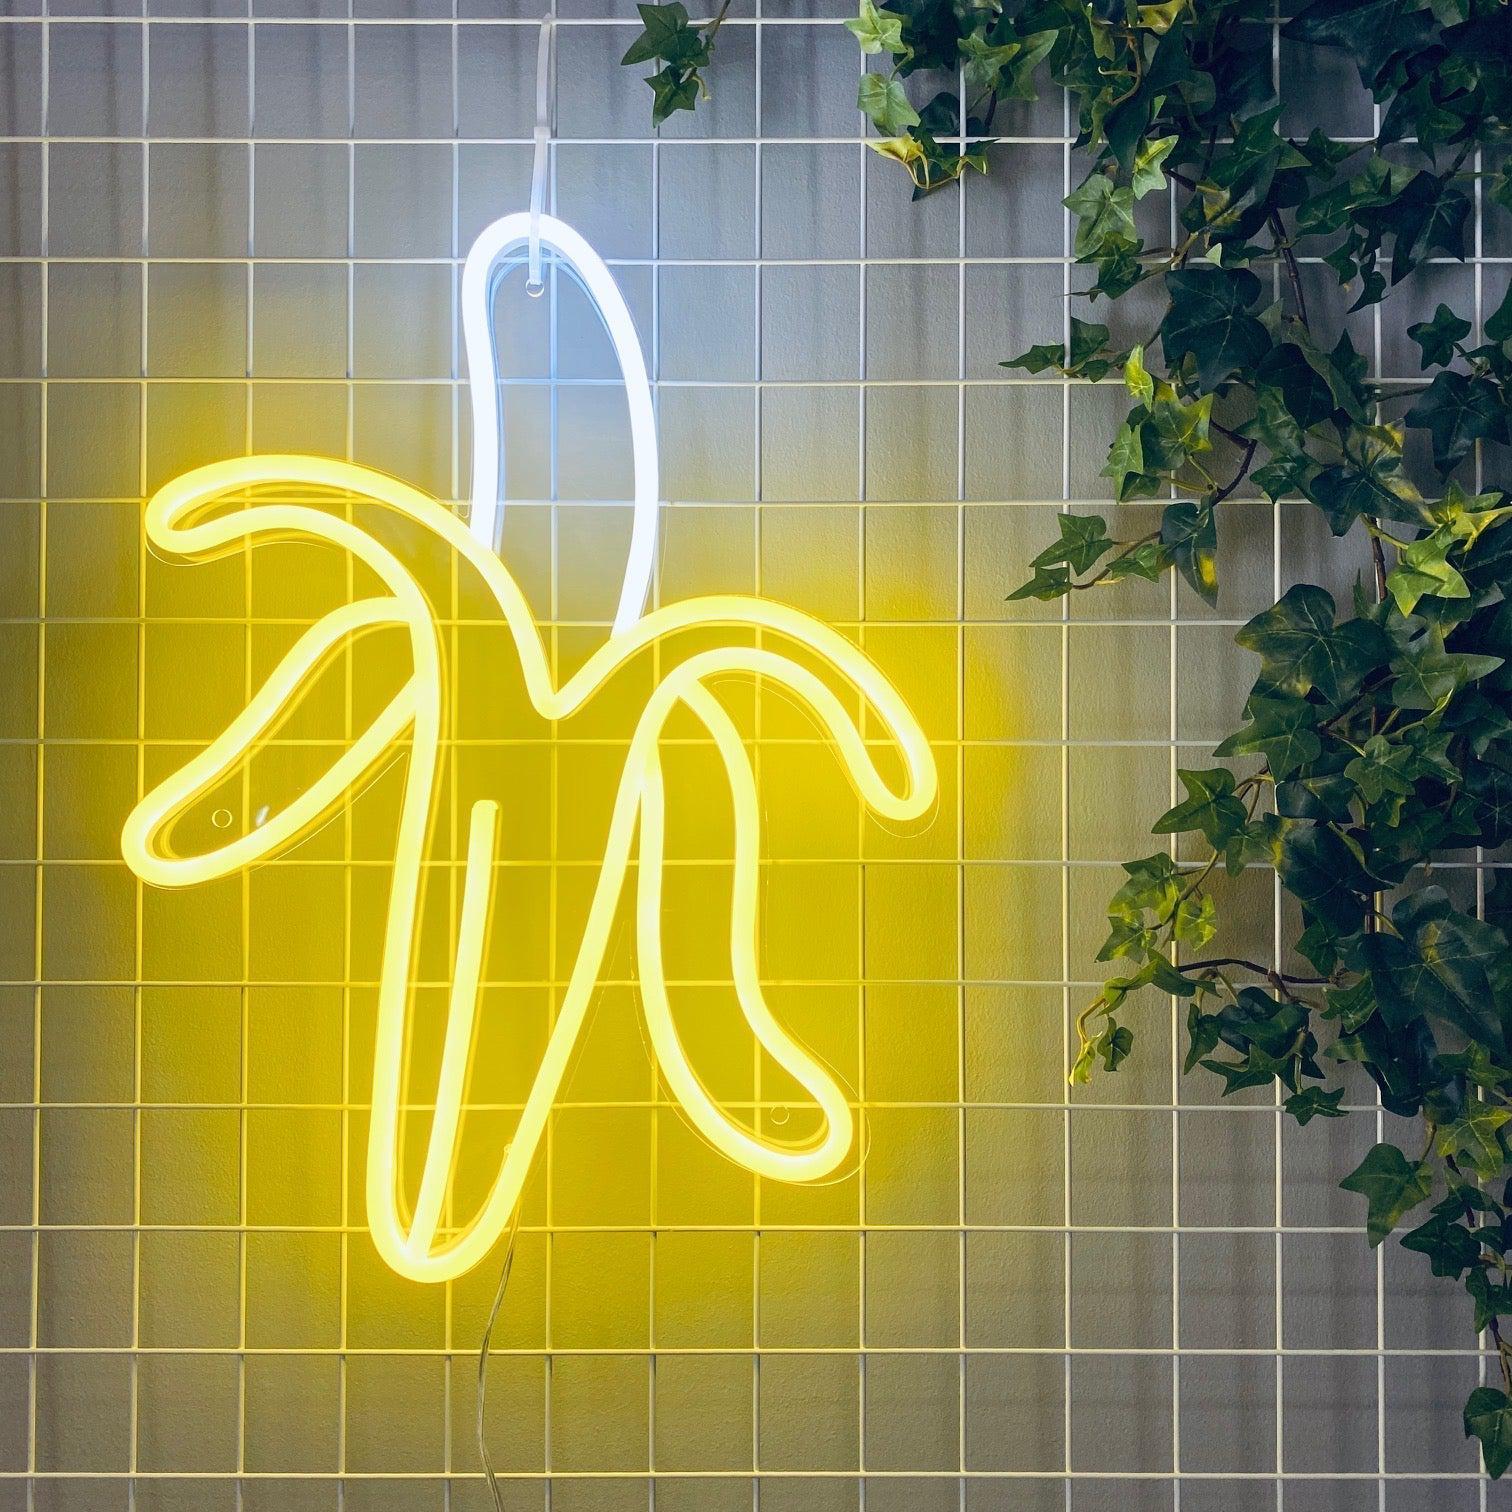 Gi et friskt pust til ditt rom med 'banan' led neonskilt i en fantastisk sitronfarge. Dette lekne neonskiltet kombinerer stil med humor og lyser opp ethvert rom med sin varme glød. En stilfull dekorasjon som garantert vil tiltrekke oppmerksomhet.